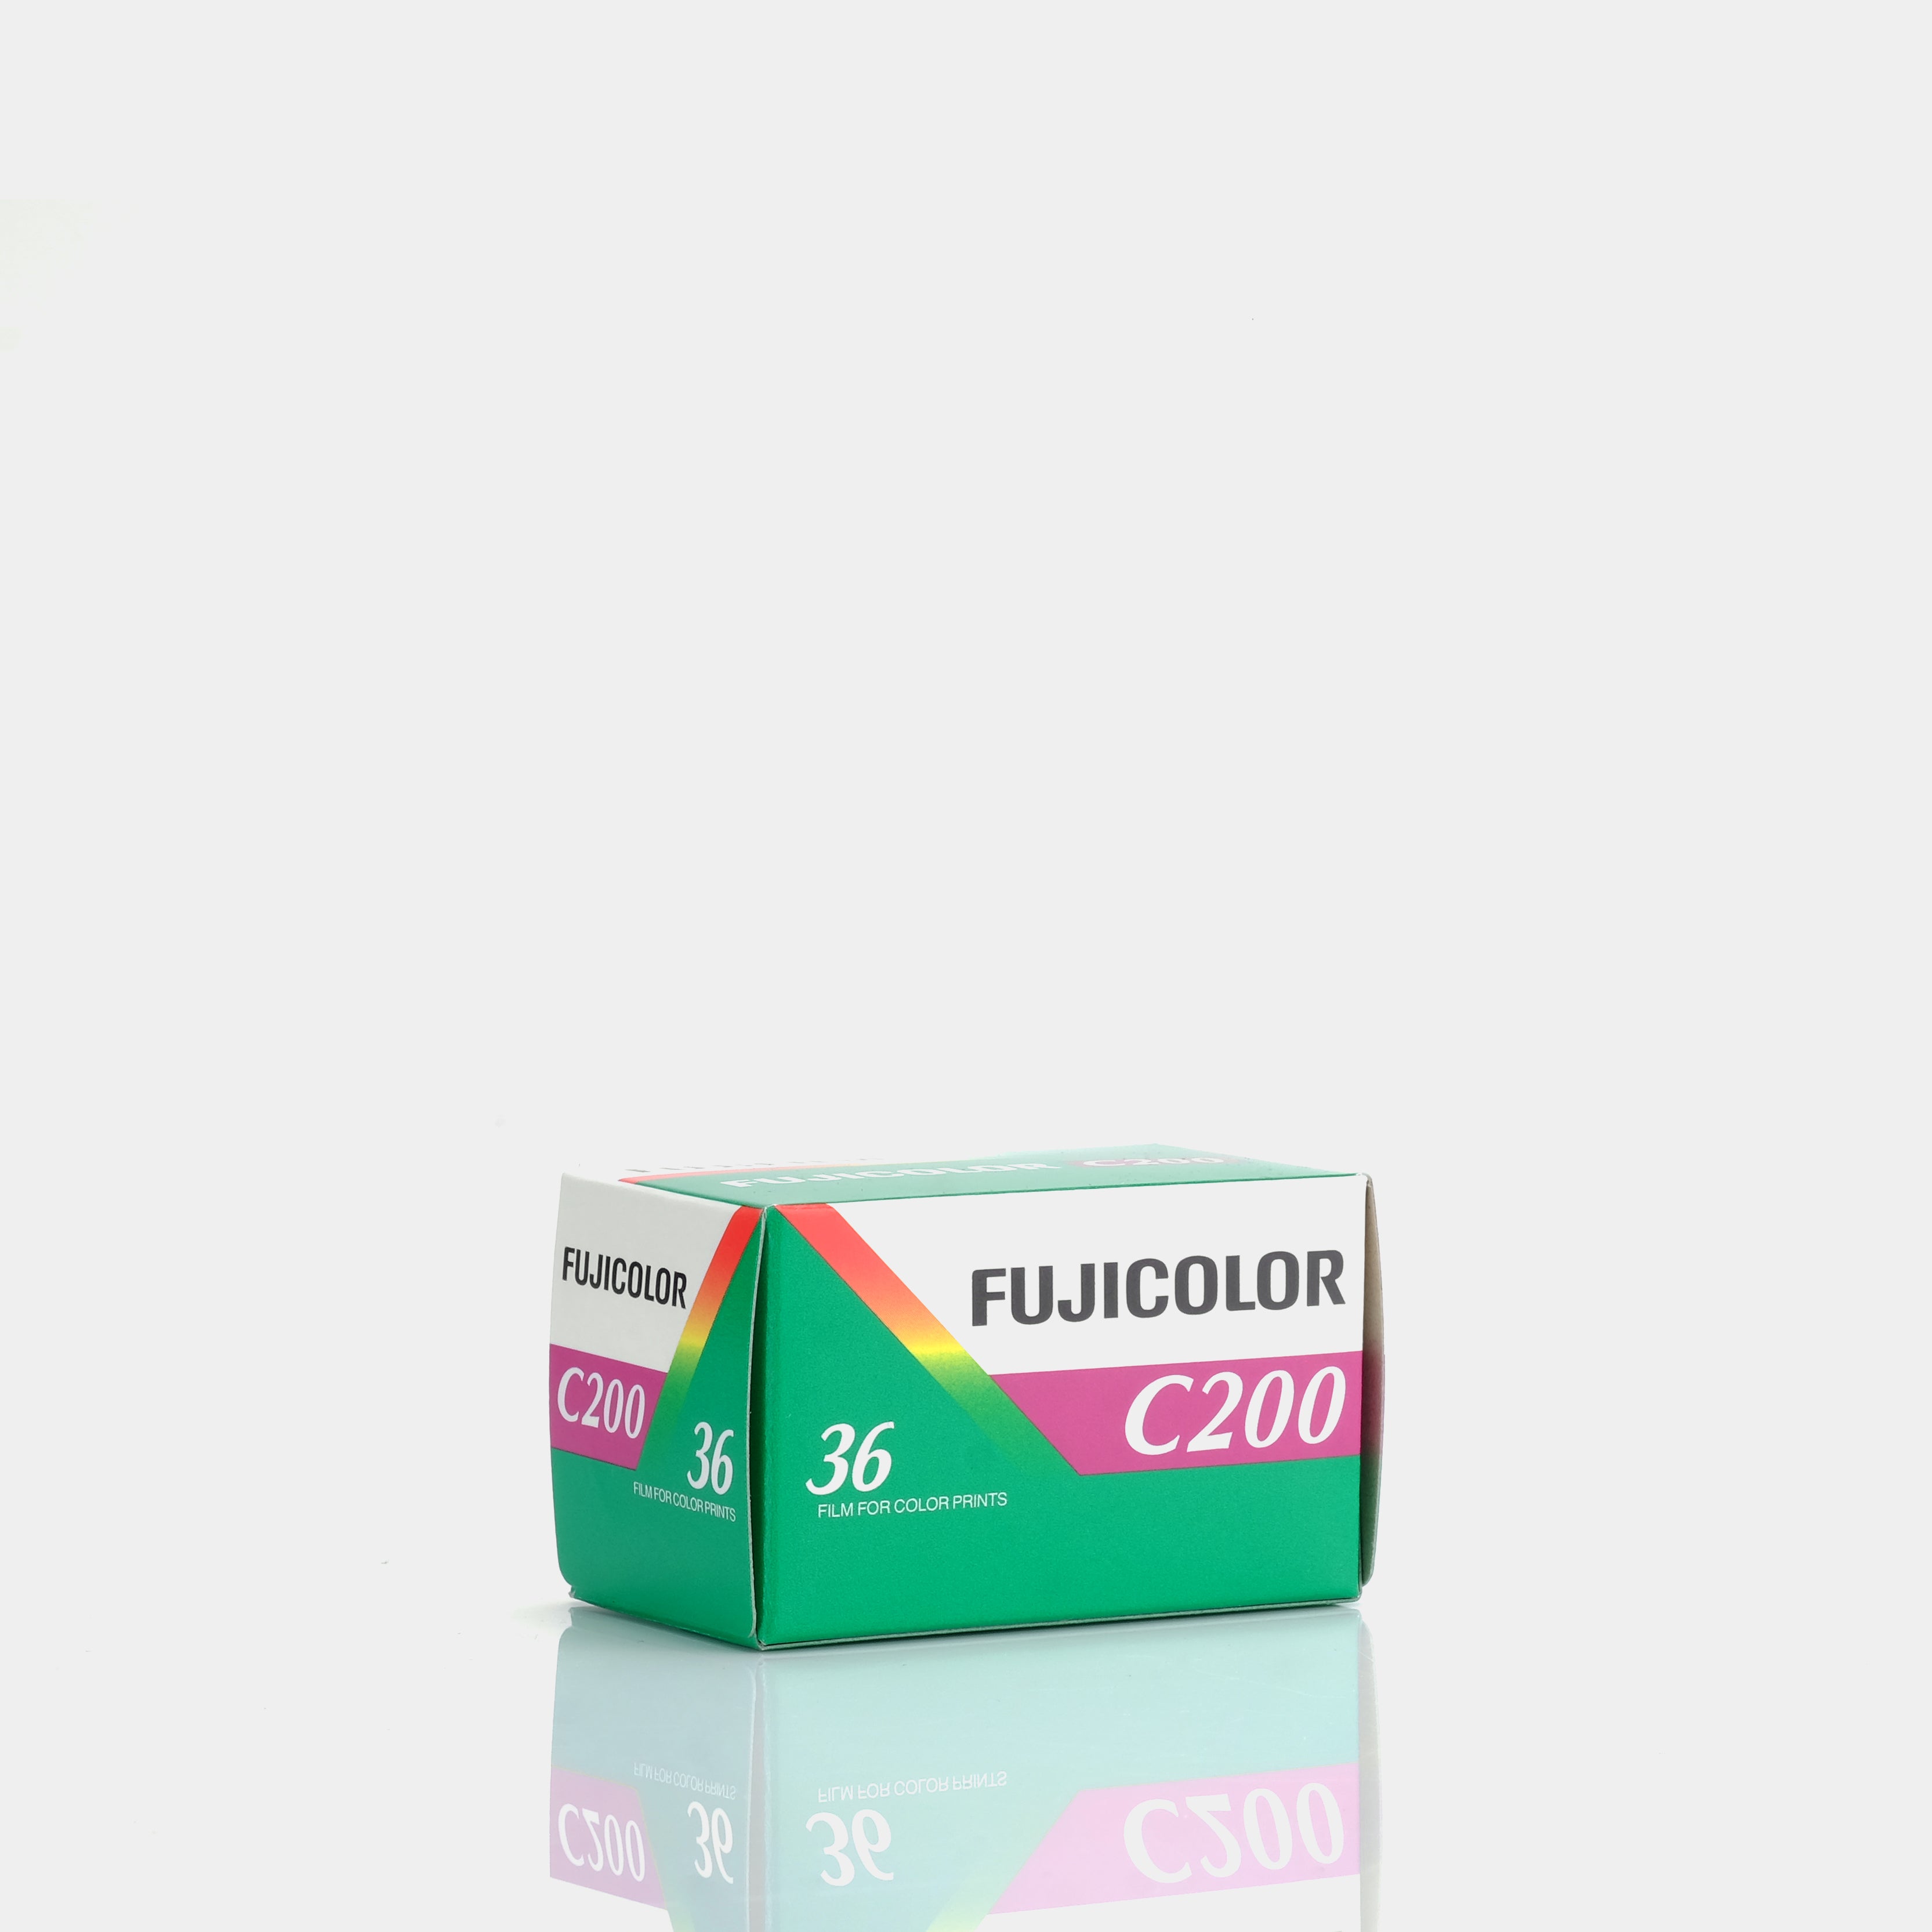 Fujifilm Fujicolor C200 Color 35mm Film (36 Exposures)